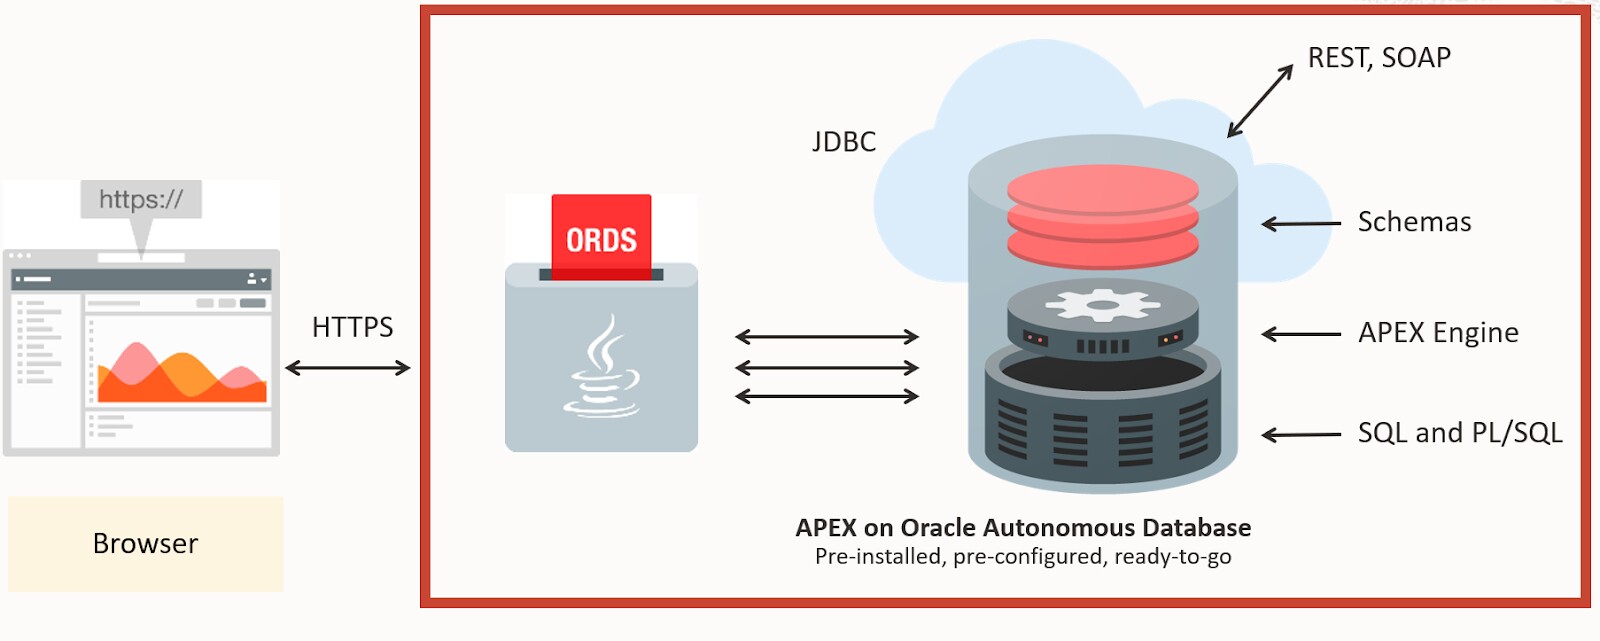 Blog 4 Oracle APEX Application Development Architecture Course